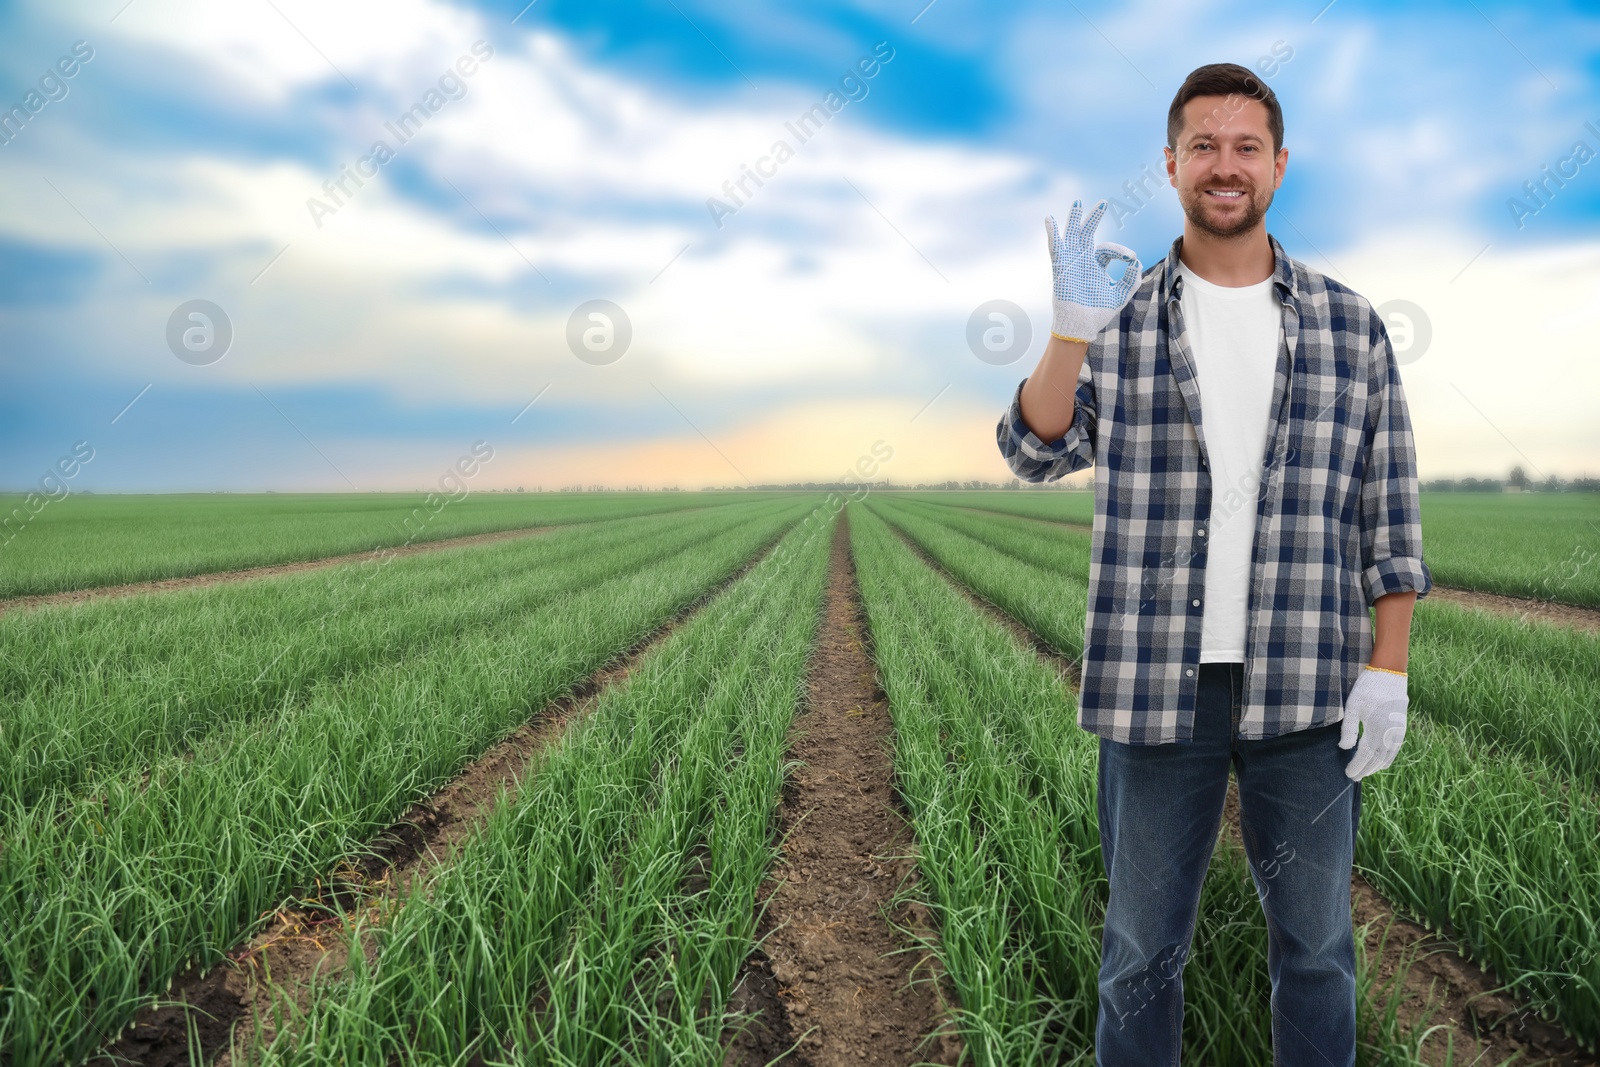 Image of Farmer showing Ok gesture in field. Harvesting season